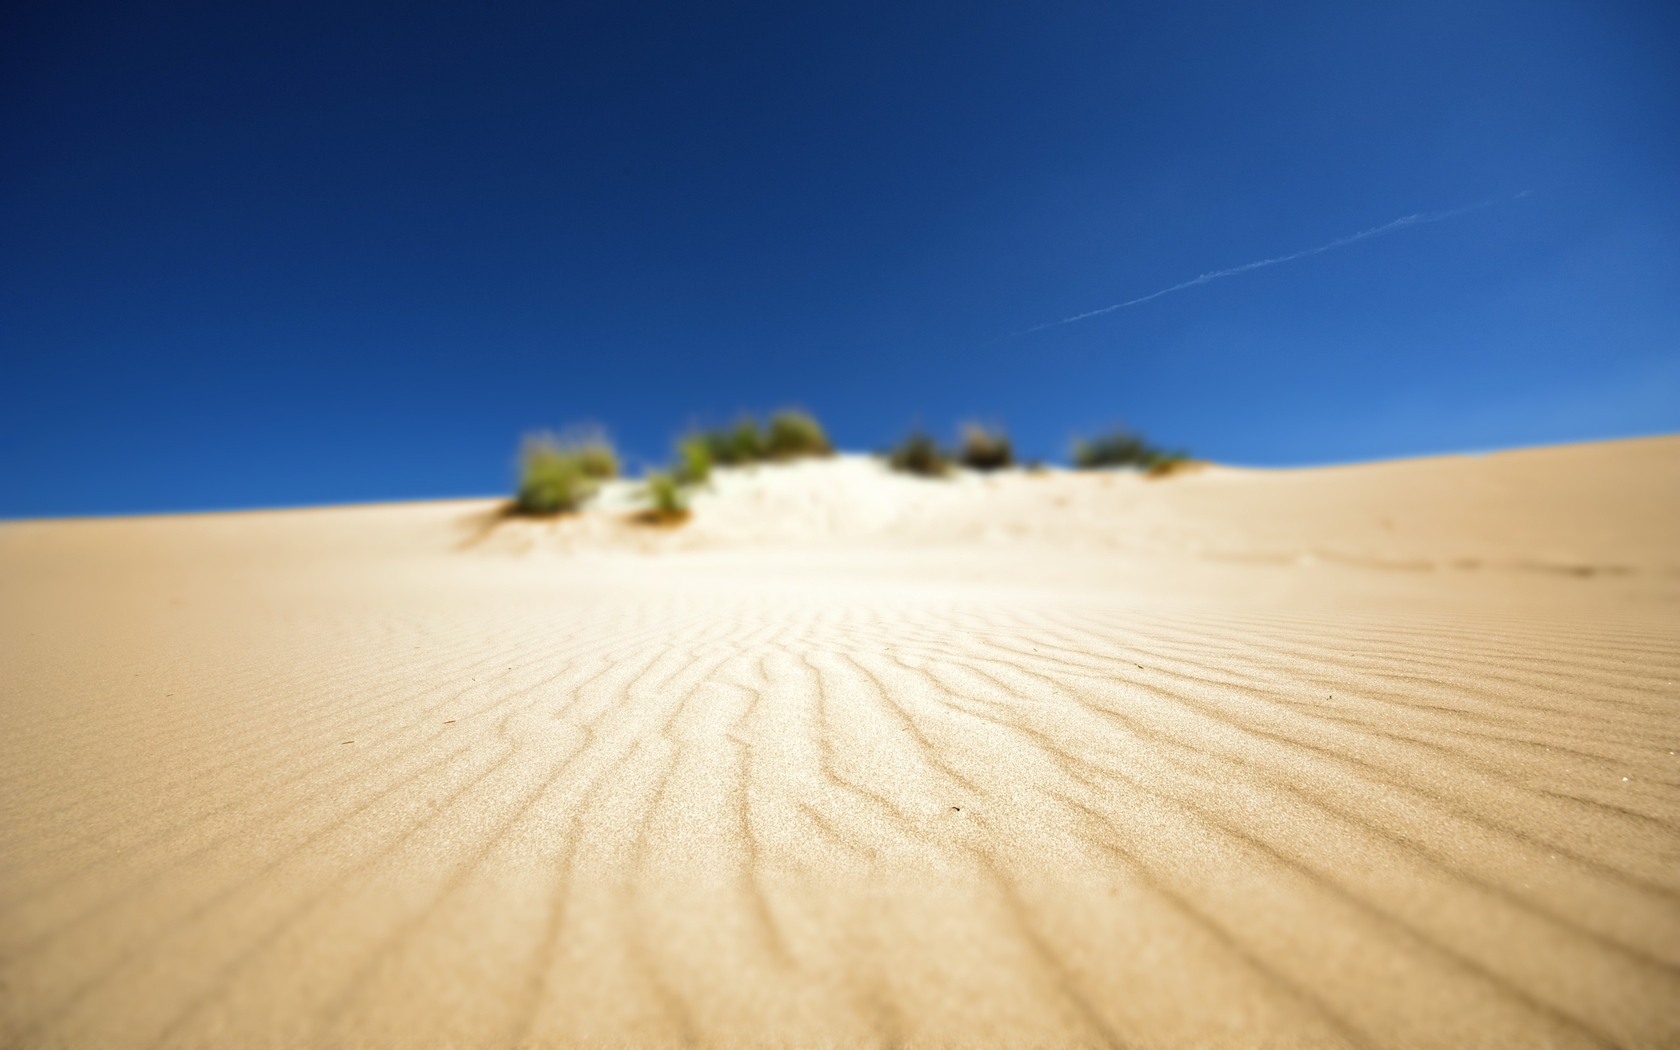 Image: Desert, sky, sand, ripples, waves, bushes, vegetation, focus